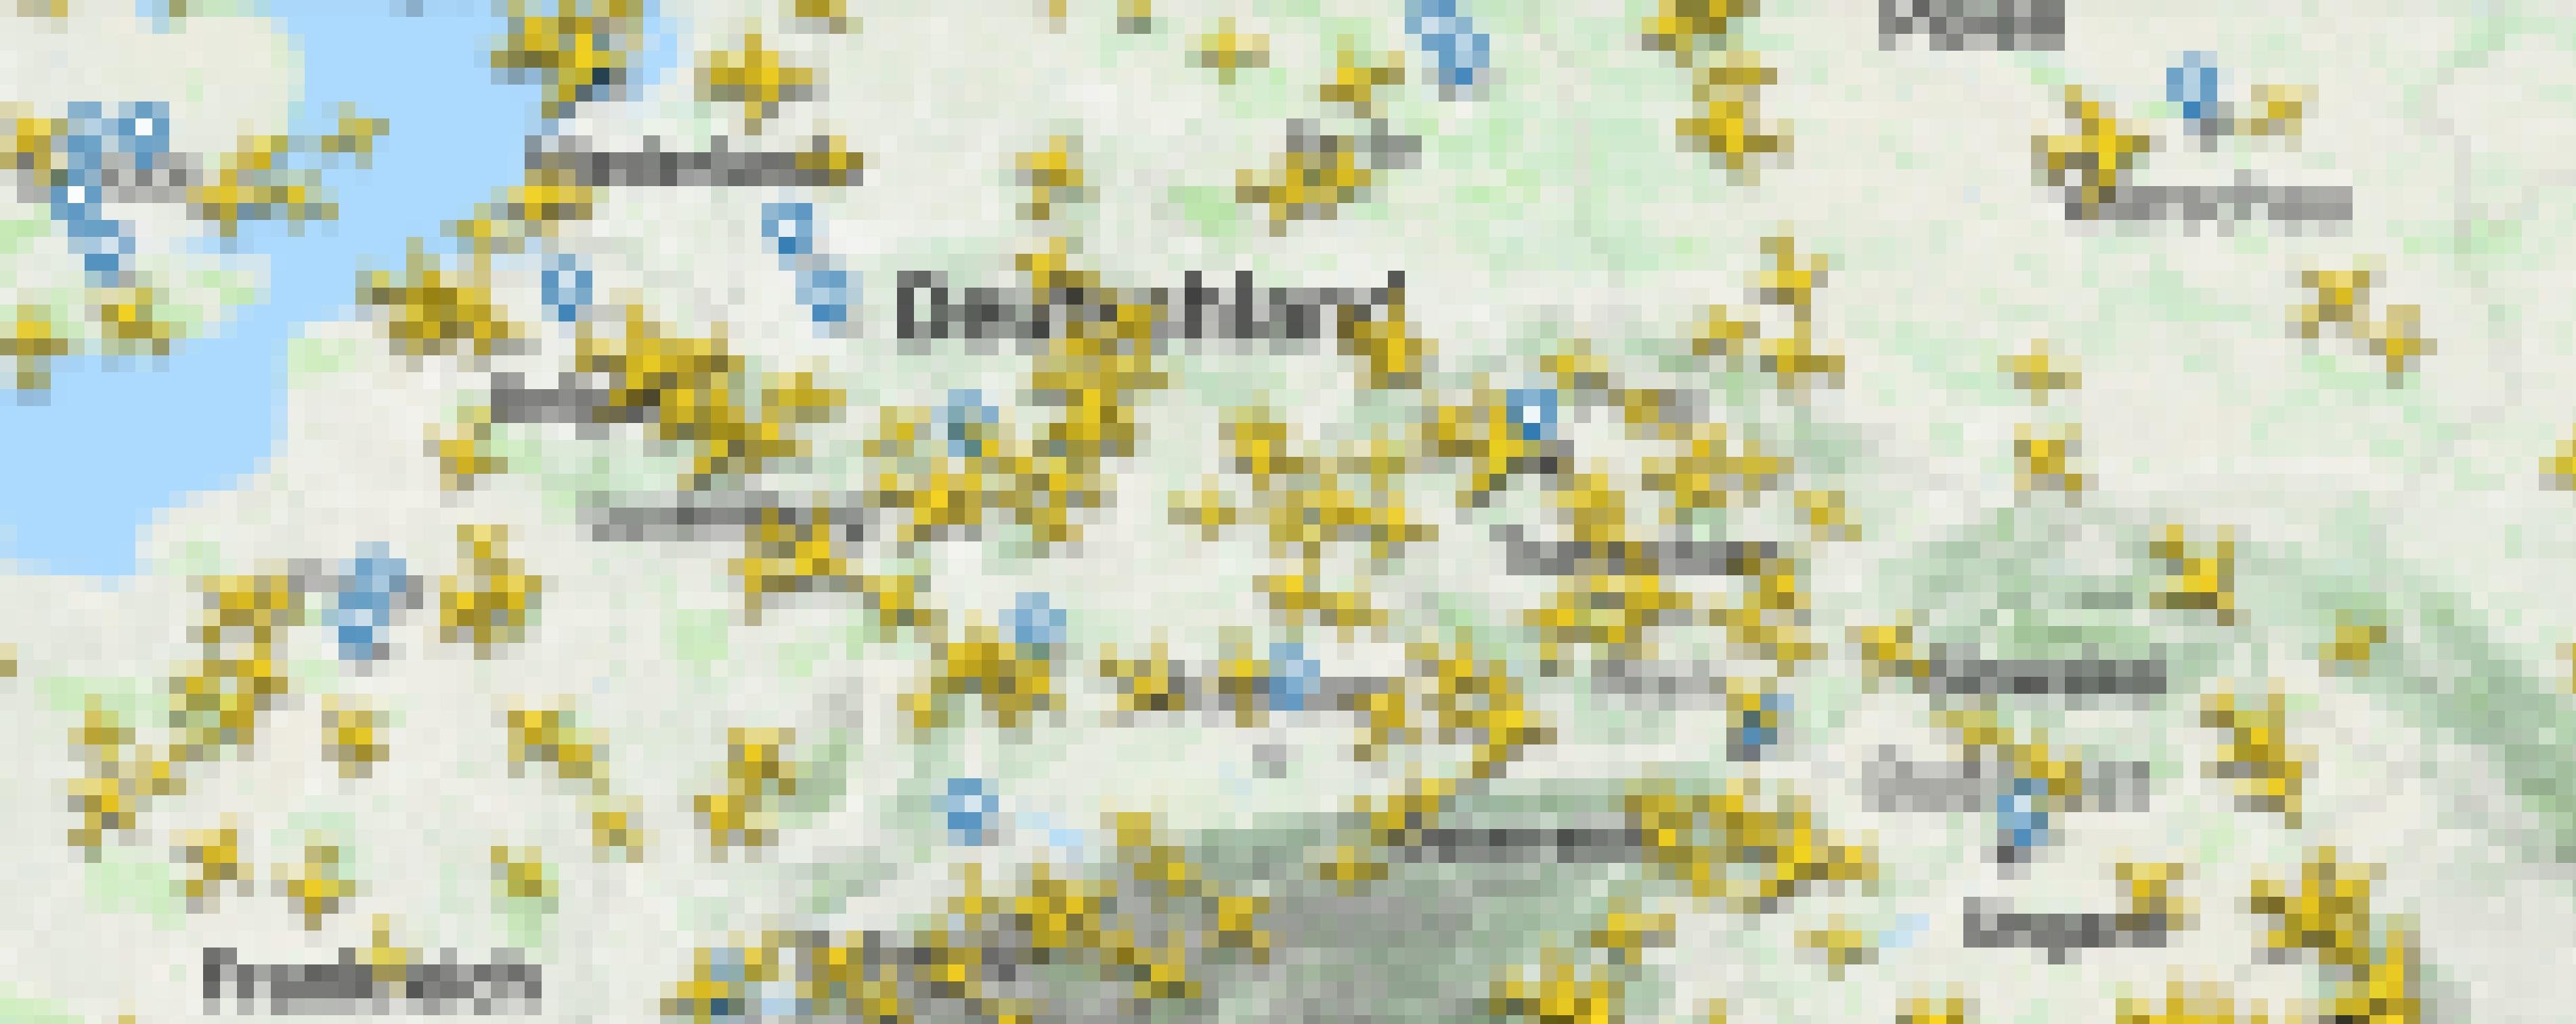 Ein Screenshot der App Flightradar24. Auf dem Bild ist zu sehen, dass über dem europäischen Luftraum sehr viele Flugzeuge gleichzeitig fliegen.